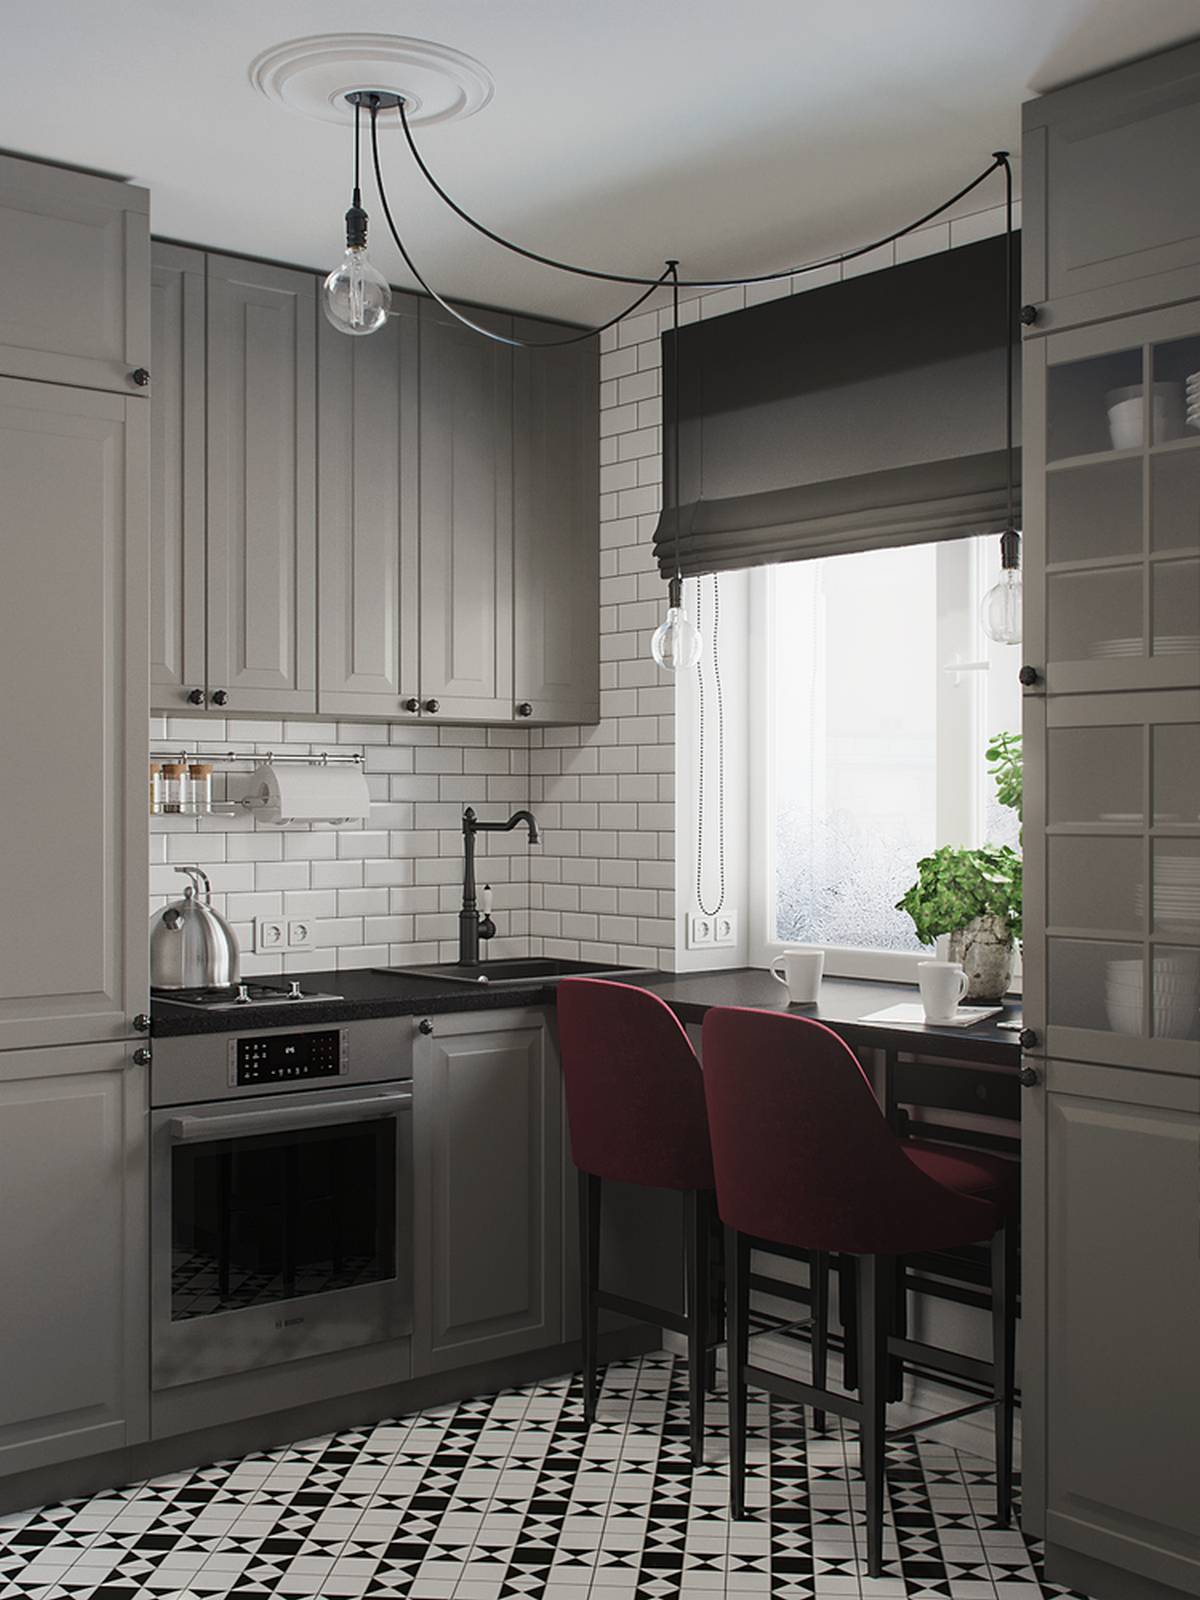 Phòng bếp sử dụng thiết kế kiểu chữ L, là kiểu bếp phù hợp với hầu hết các căn hộ có diện tích vừa và nhỏ. Hệ tủ bếp màu xám bao bọc xung quanh bức tường ốp gạch trắng sáng bóng cũng như sàn gạch tương đồng với lối vào nhà.